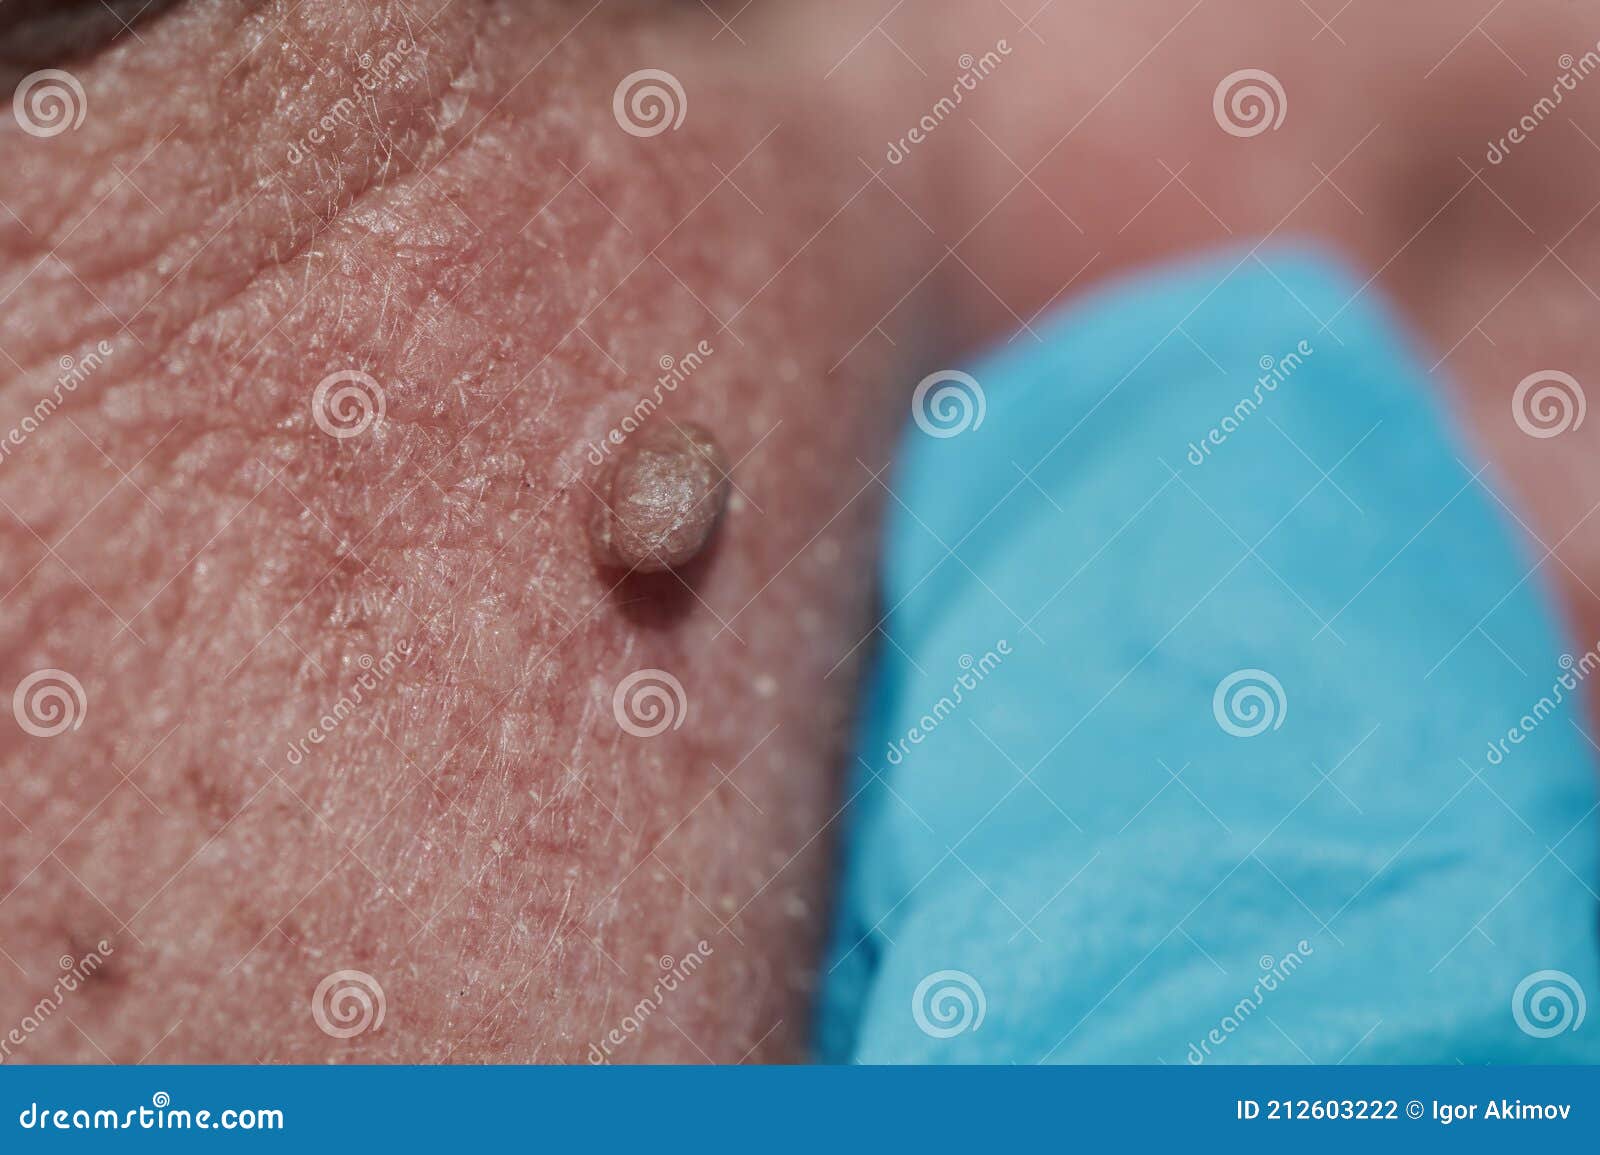 Problème de prostate chez lhomme - Papillomavirus homme soigner